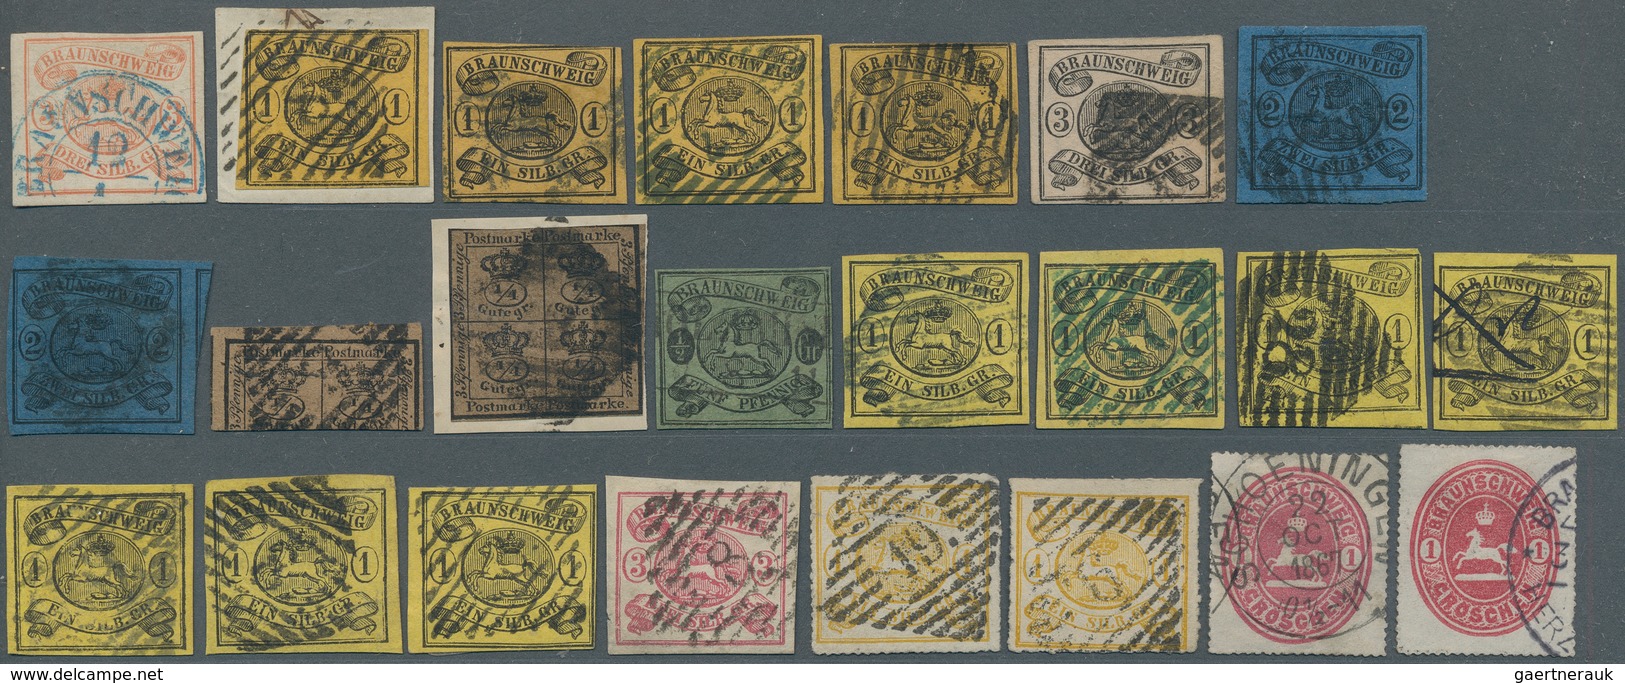 Braunschweig - Marken Und Briefe: 1852/1865, Sauber Gestempelte Sammlungapartie Von 23 Marken, Etwas - Brunswick